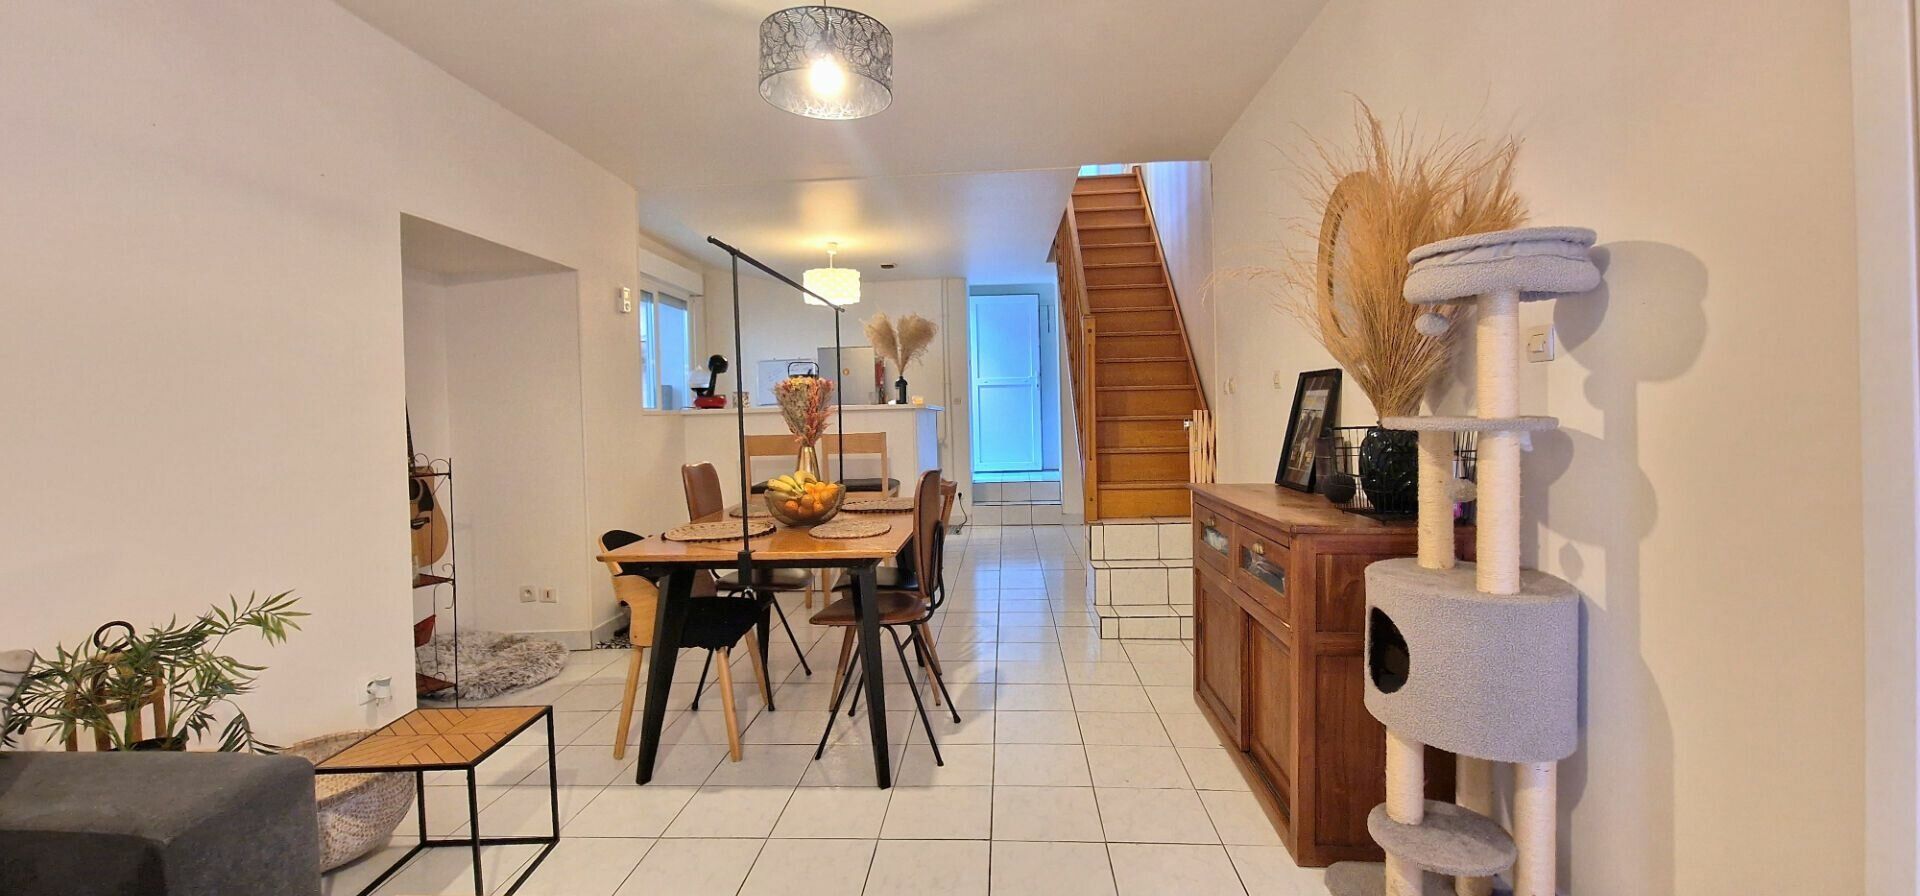 Appartement à vendre 3 70.44m2 à Le Havre vignette-2